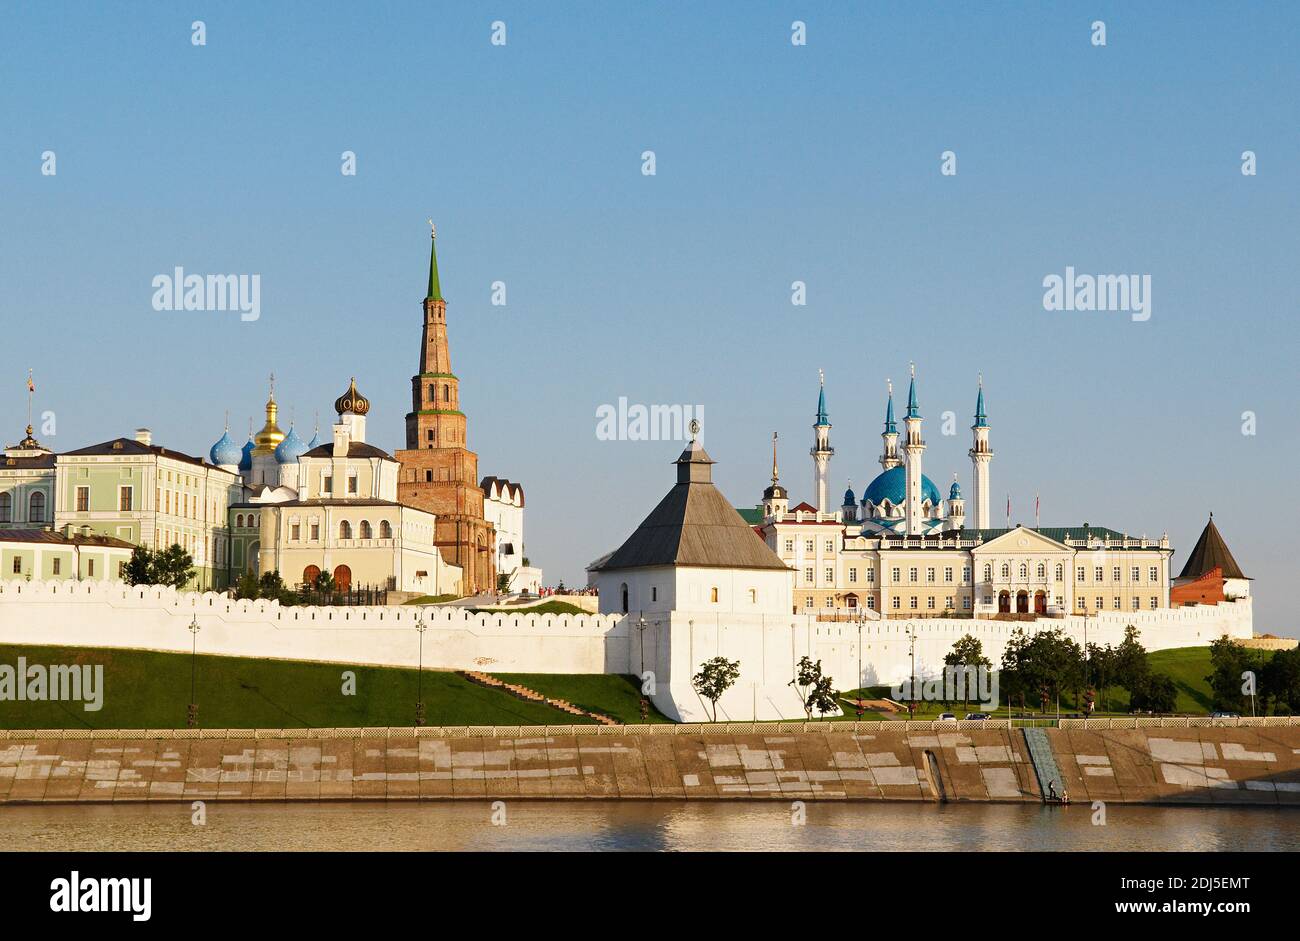 Russie, République du Tatarstan, ville de Kazan. Complexe historique et architectural du Kremlin de Kazan, patrimoine mondial de l'UNESCO. Banque D'Images